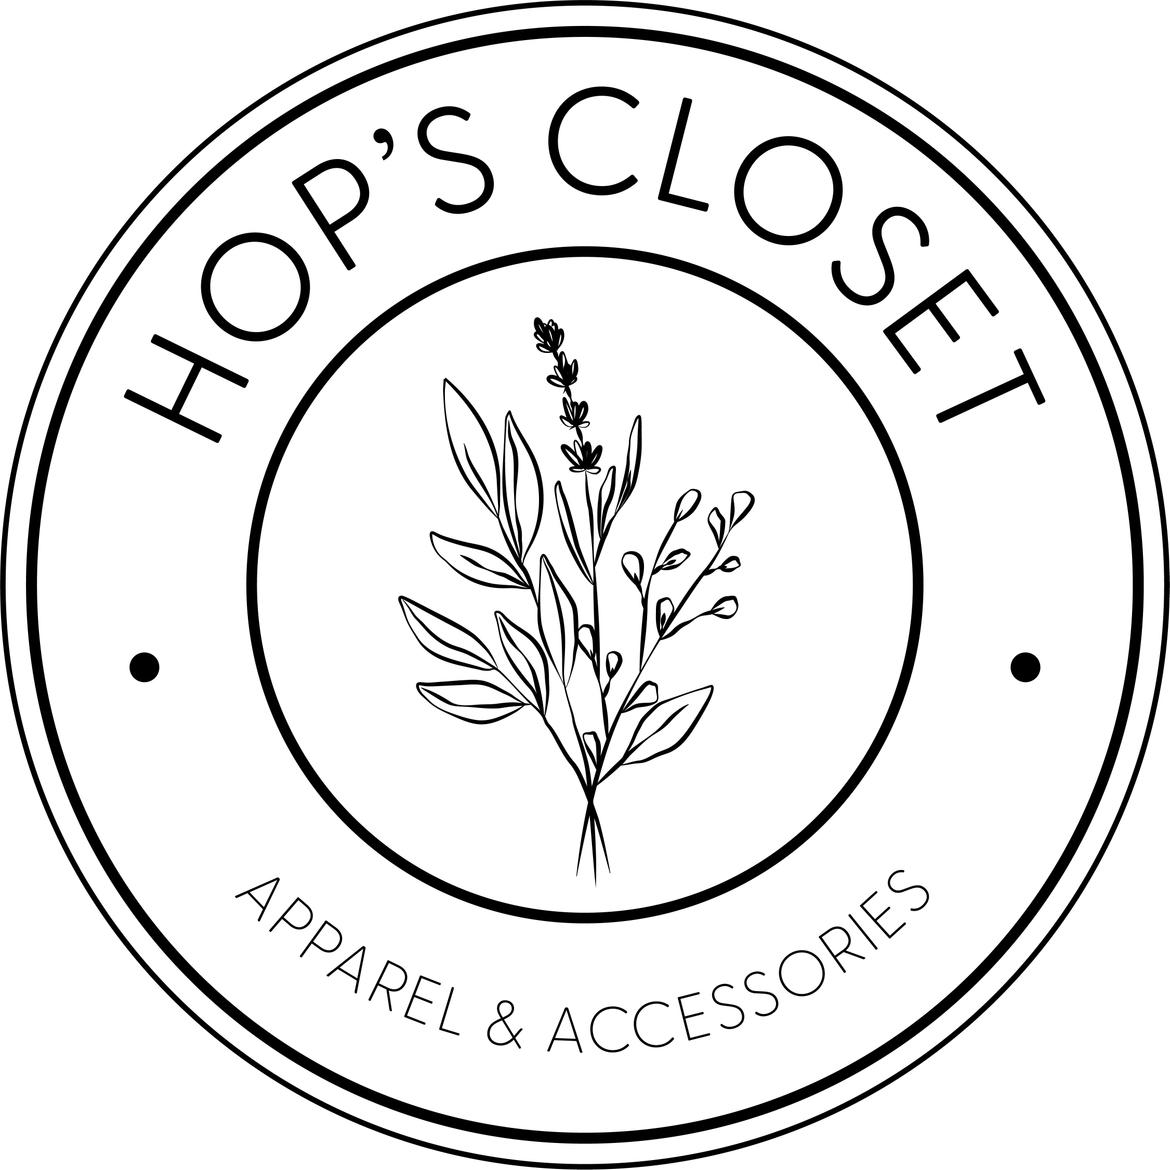 Hop’s Closet's images